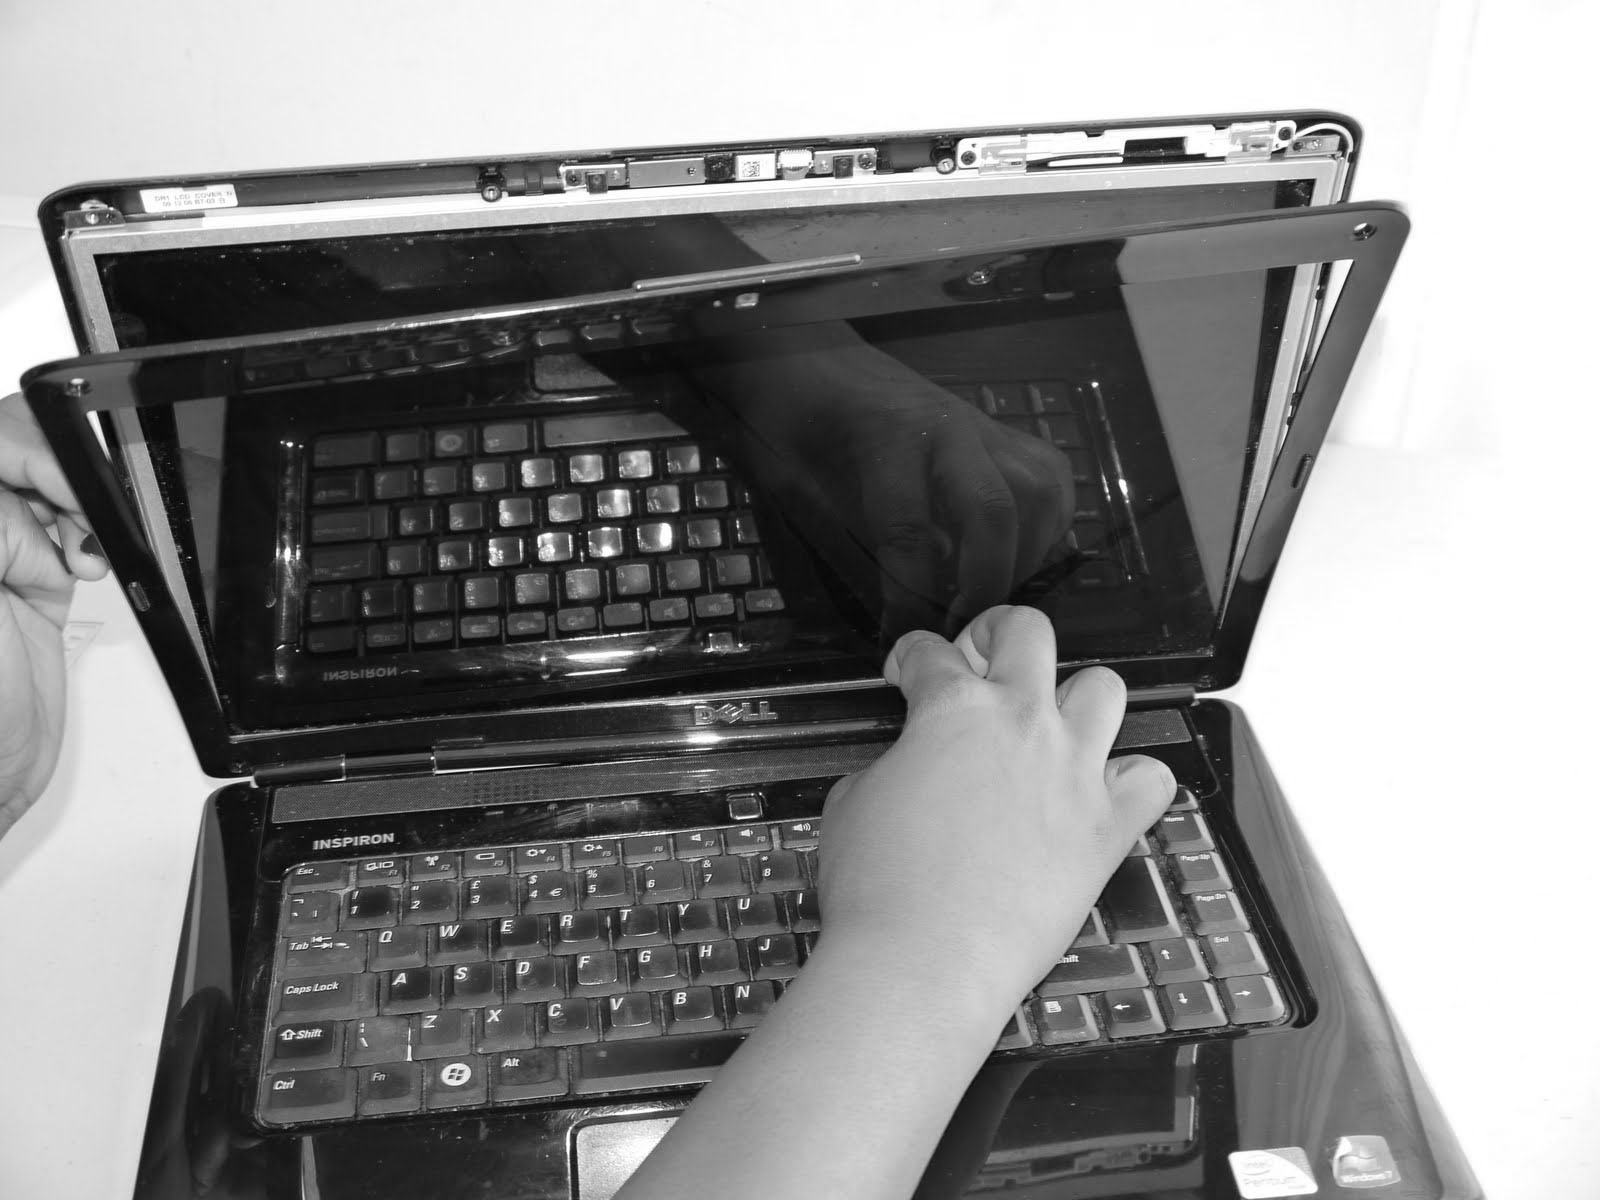 asus laptop screen, screen damage, screen repair, screen broken, screen repair images